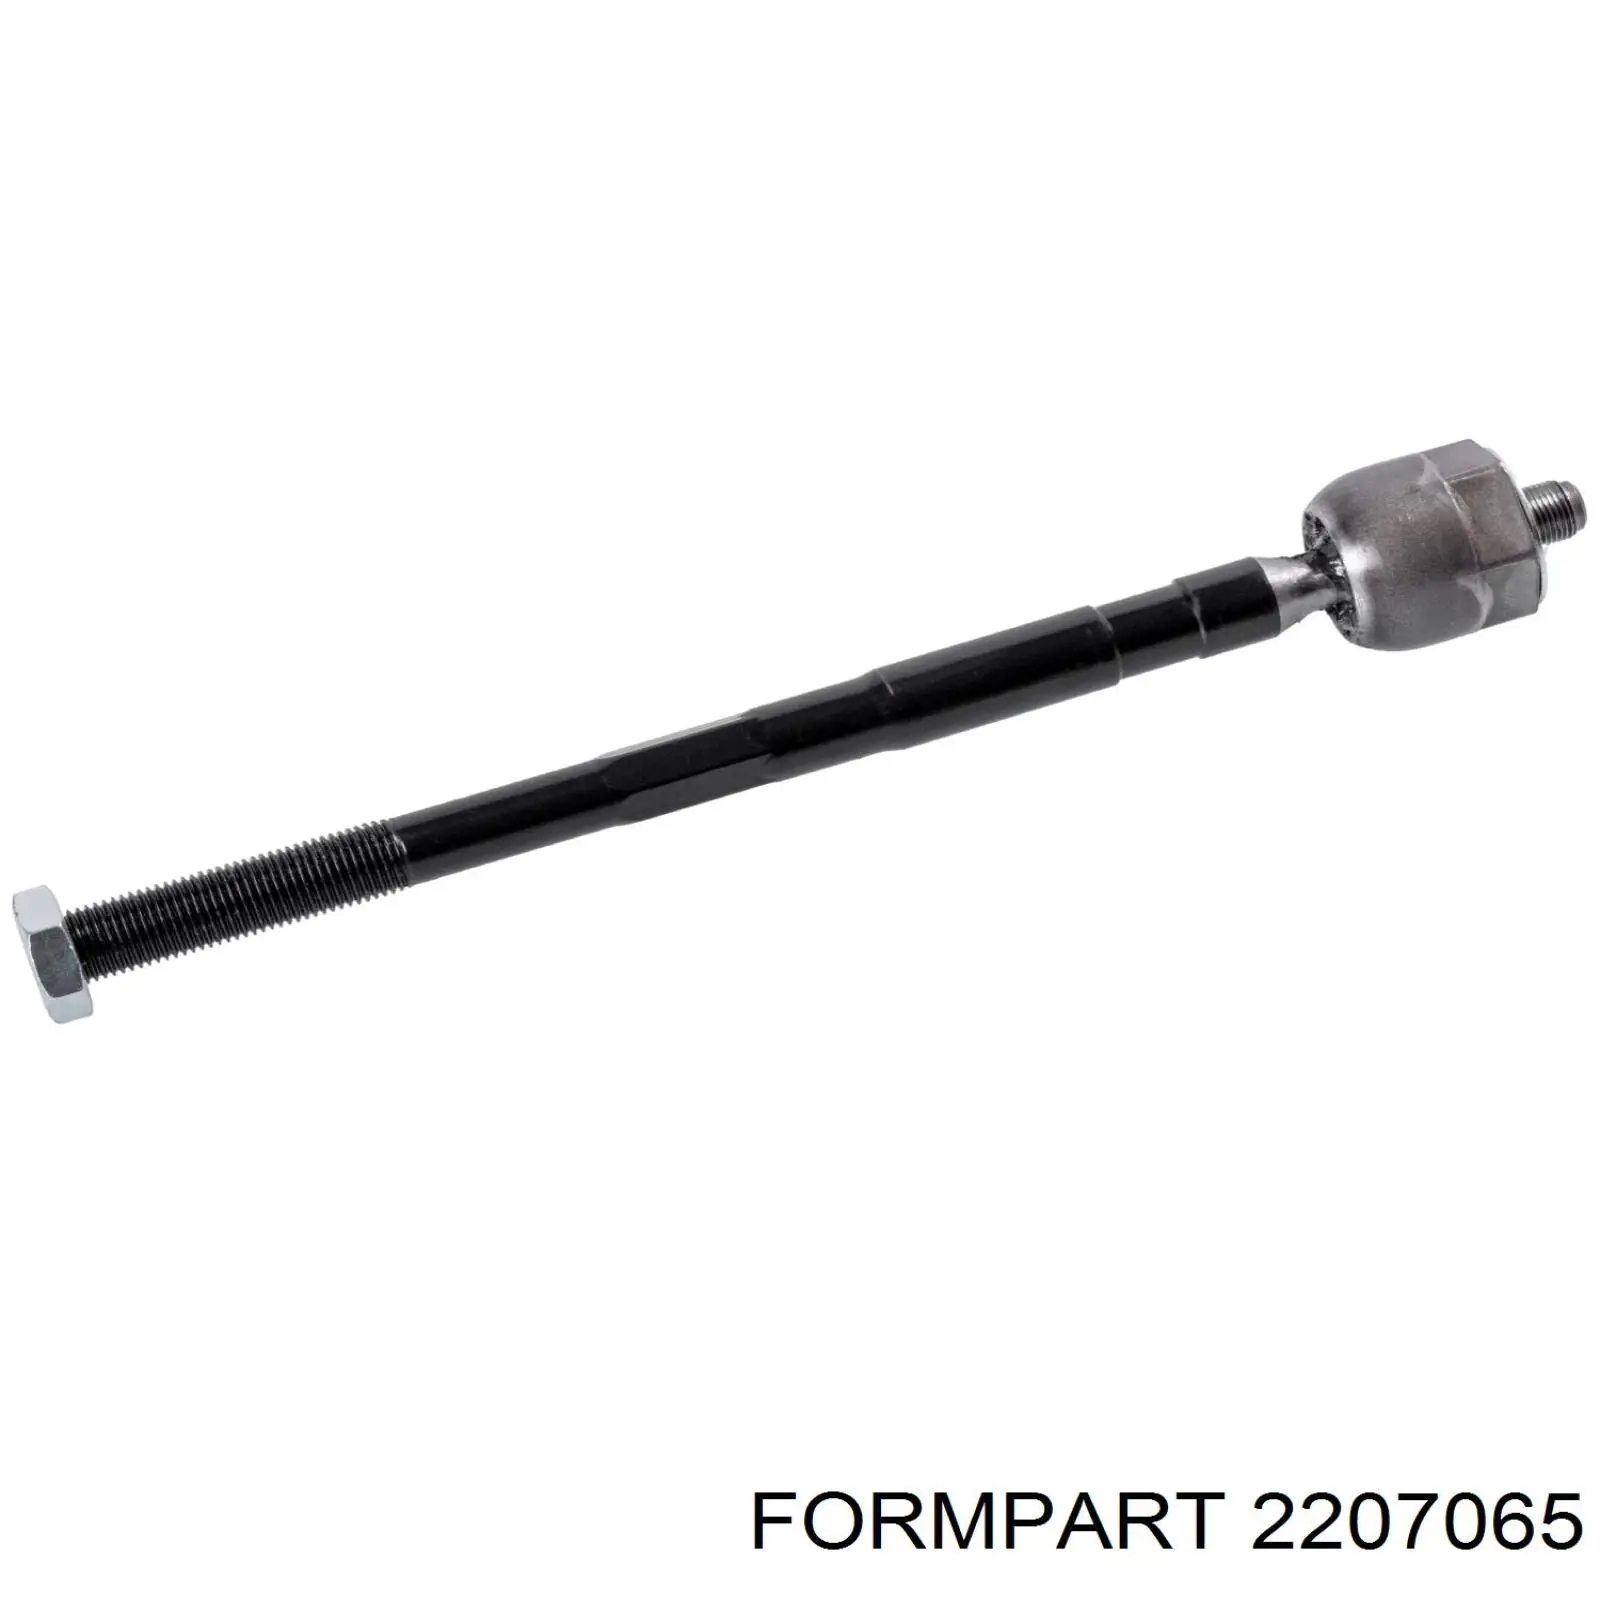 2207065 Formpart/Otoform barra de acoplamiento